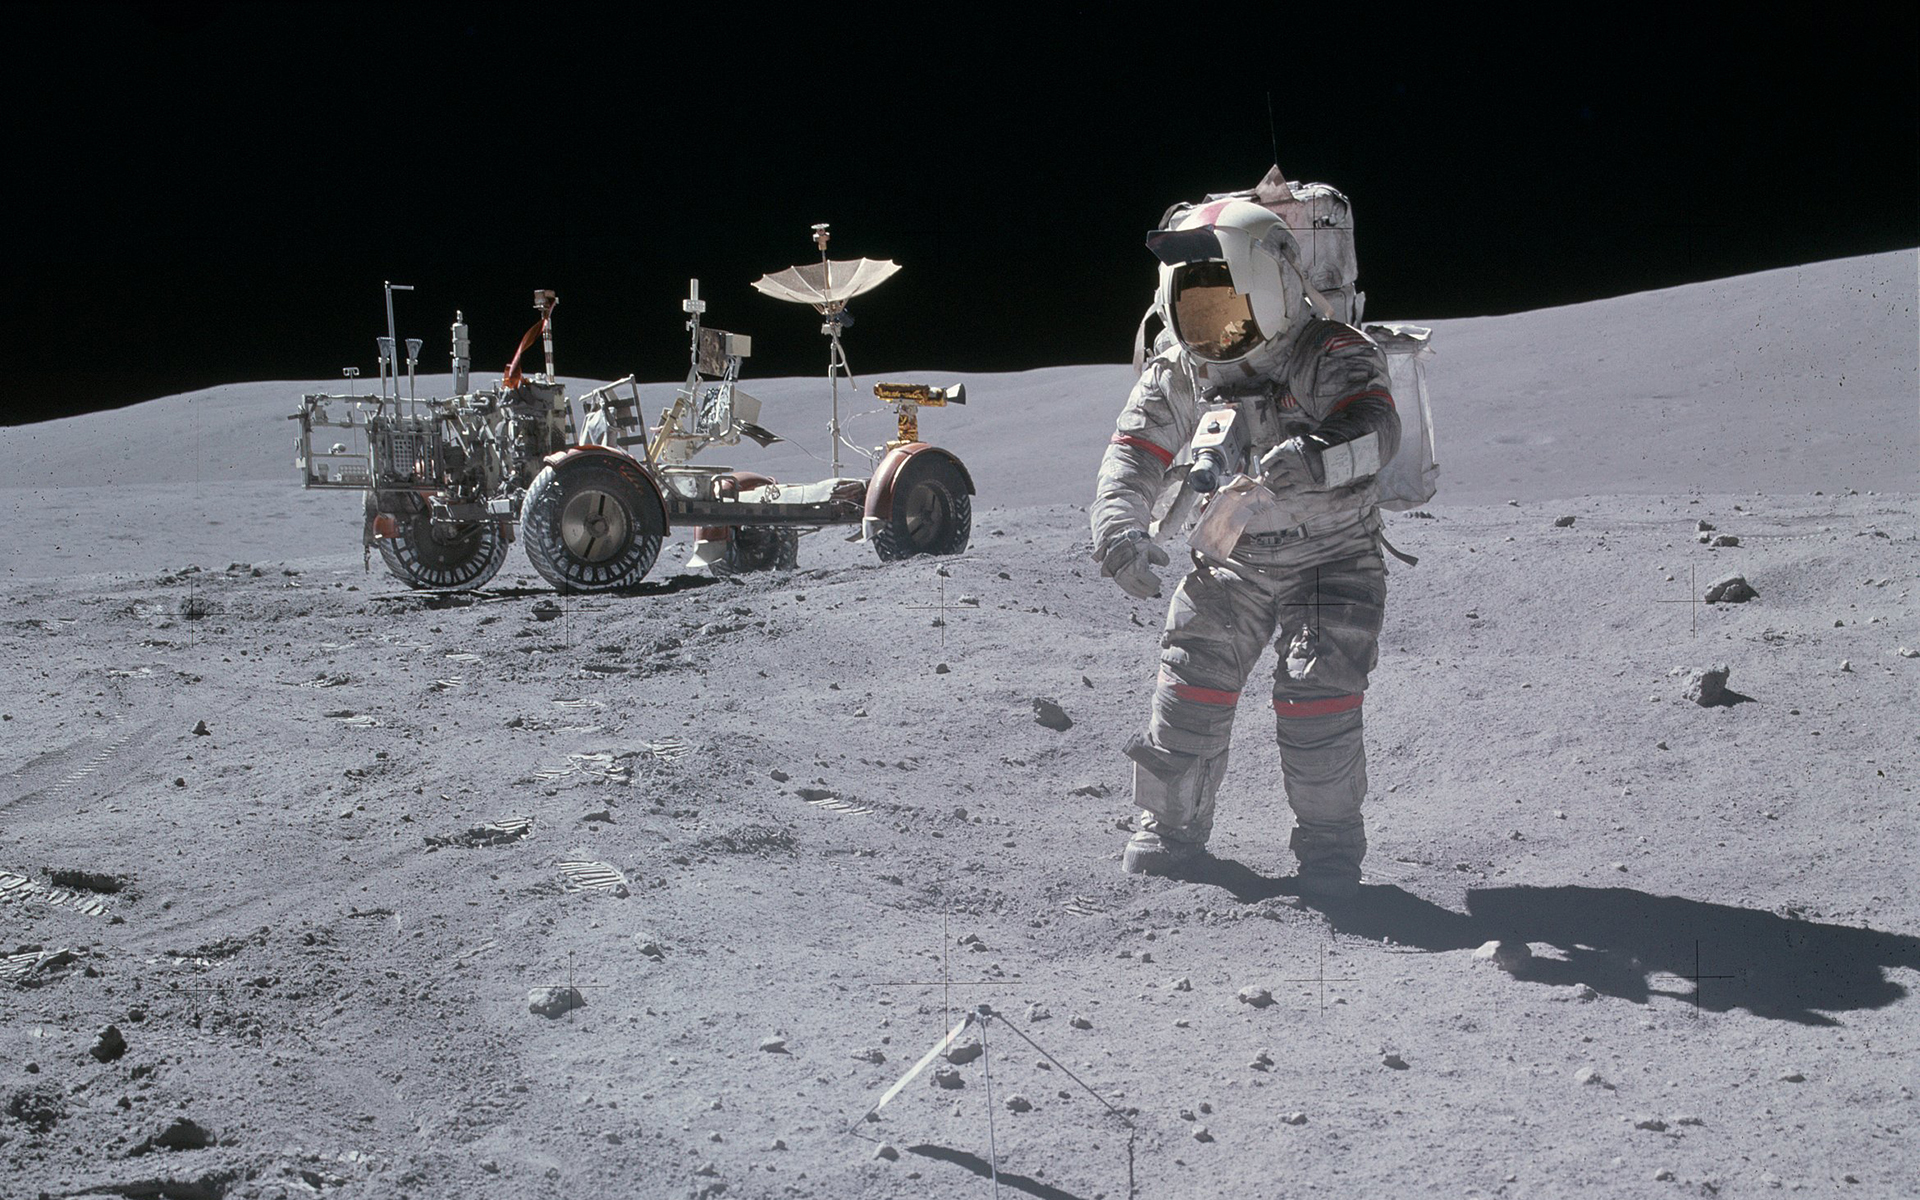 Человек который впервые оказался на поверхности луны. Человек на Луне Аполлон 11. Миссия Аполлон 11. Аполлон 16 фото на Луне.